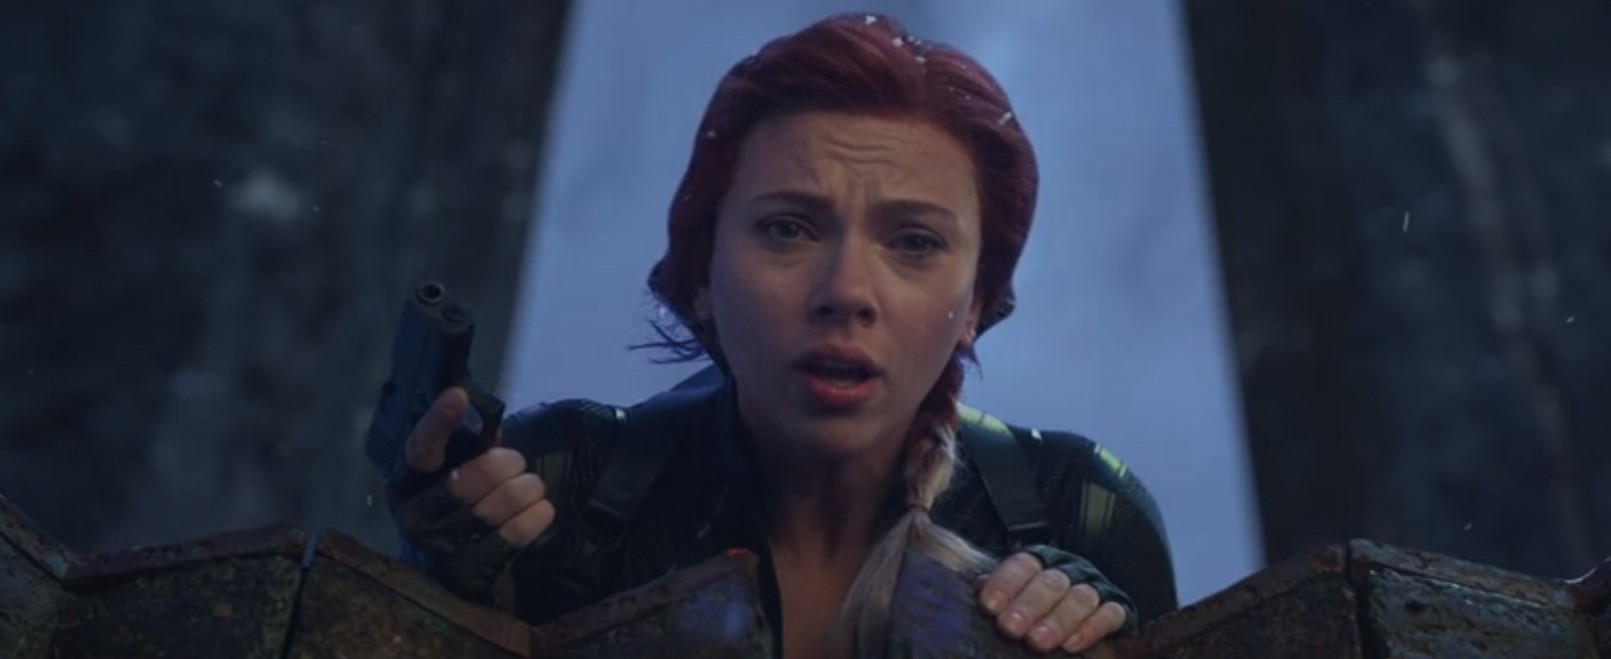 اسکارلت جوهانسون در صحنه فیلم سینمایی Avengers: Endgame